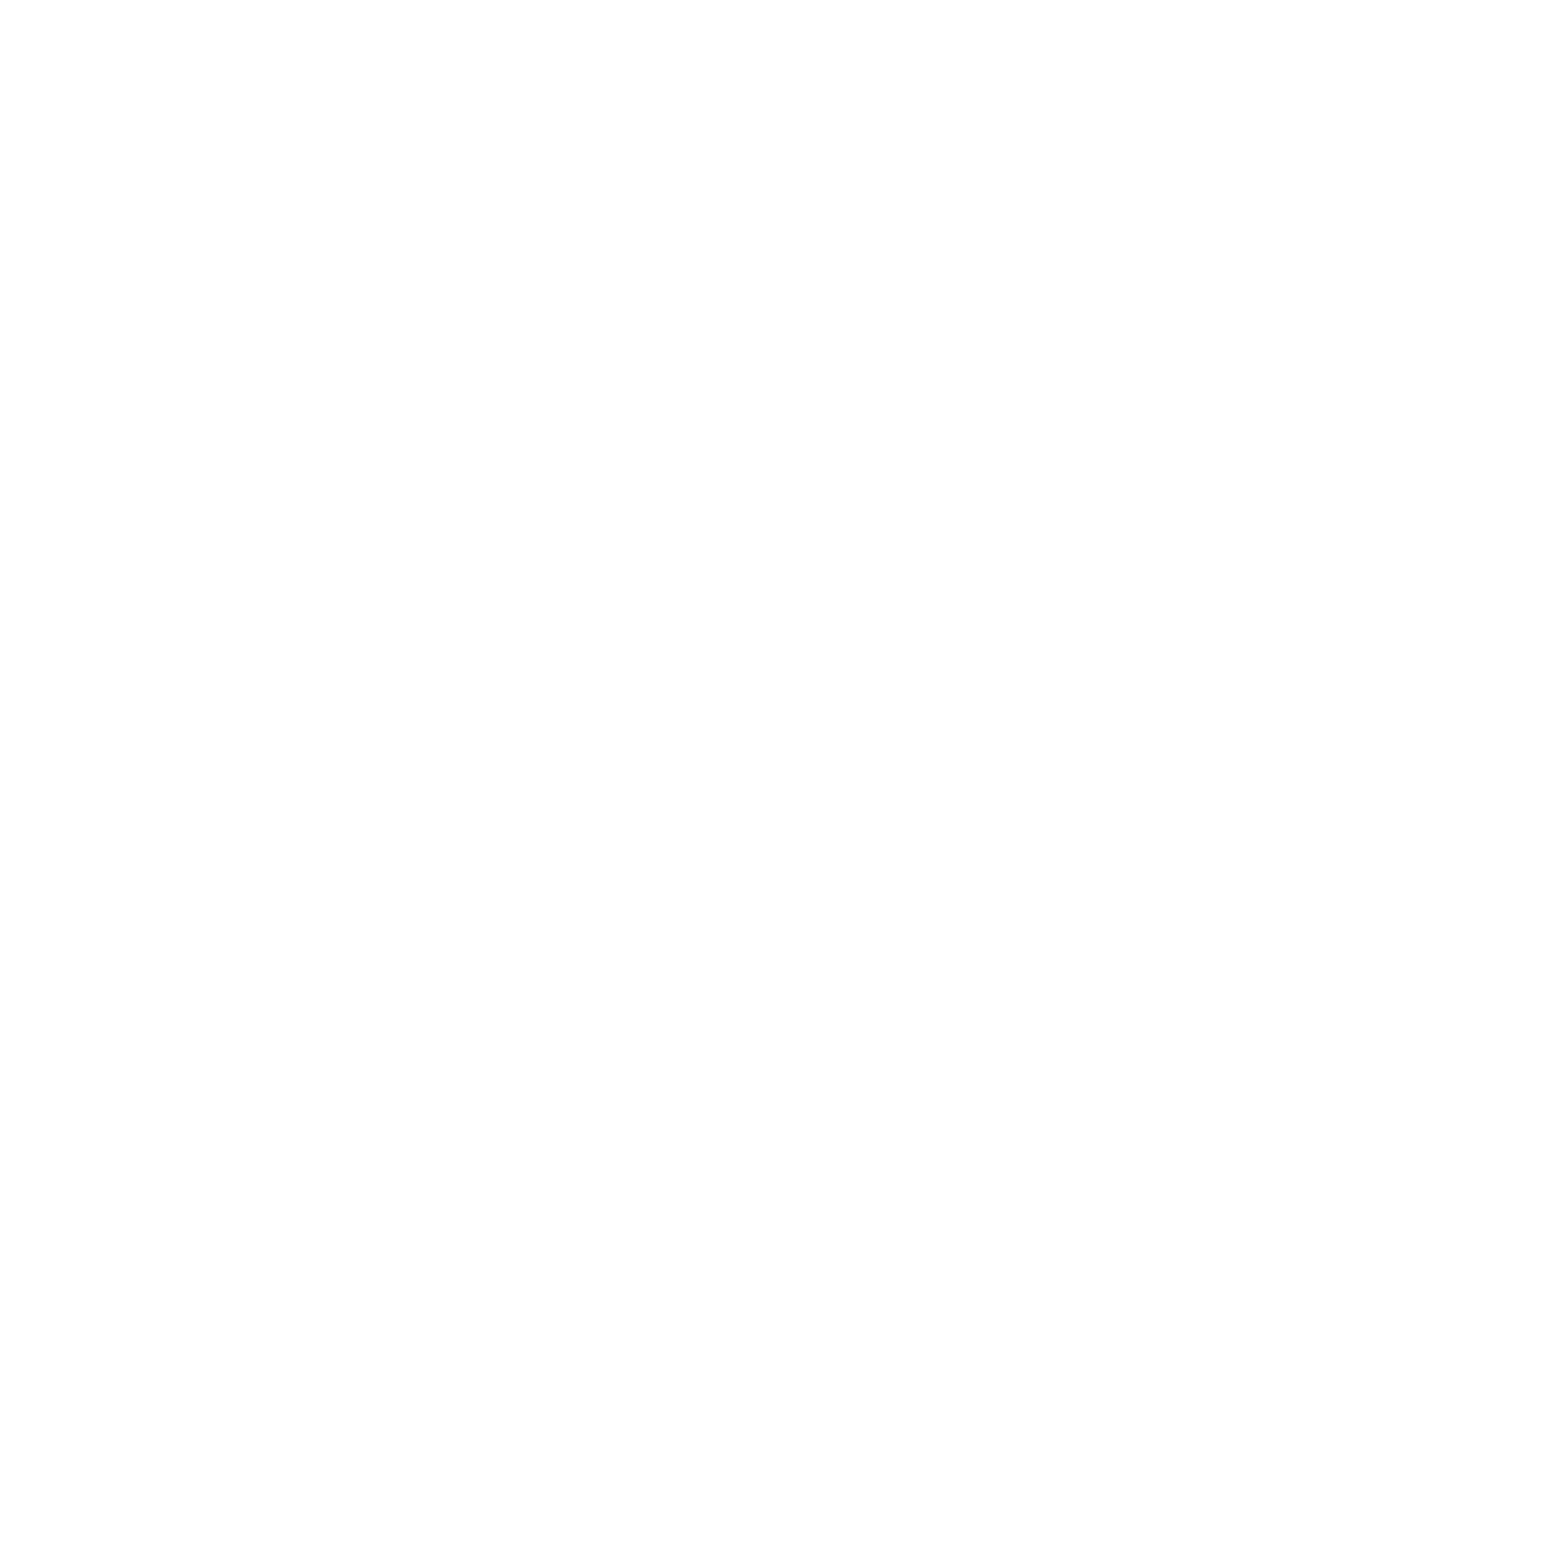 GR computer SFW